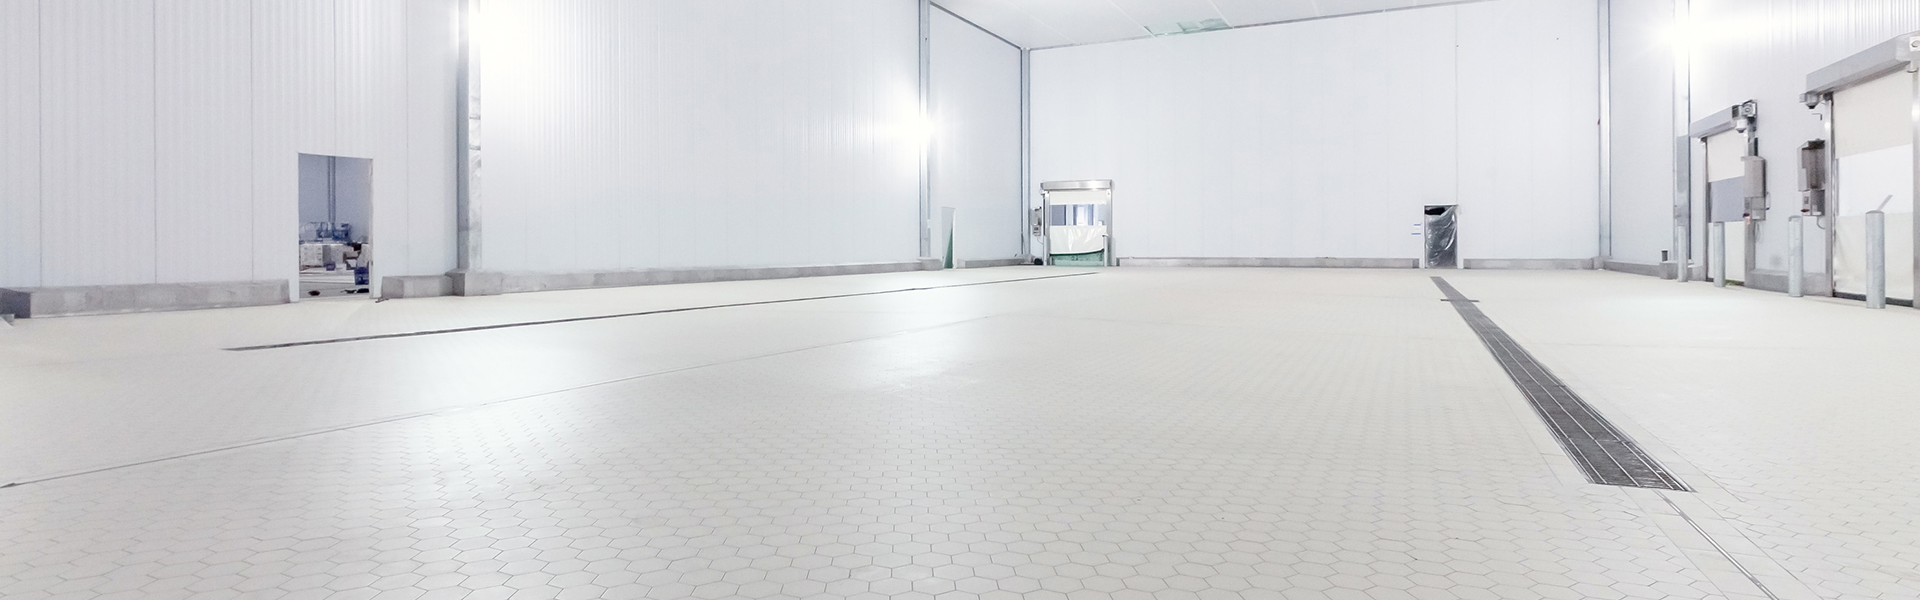 industrial tile flooring in dairy plant